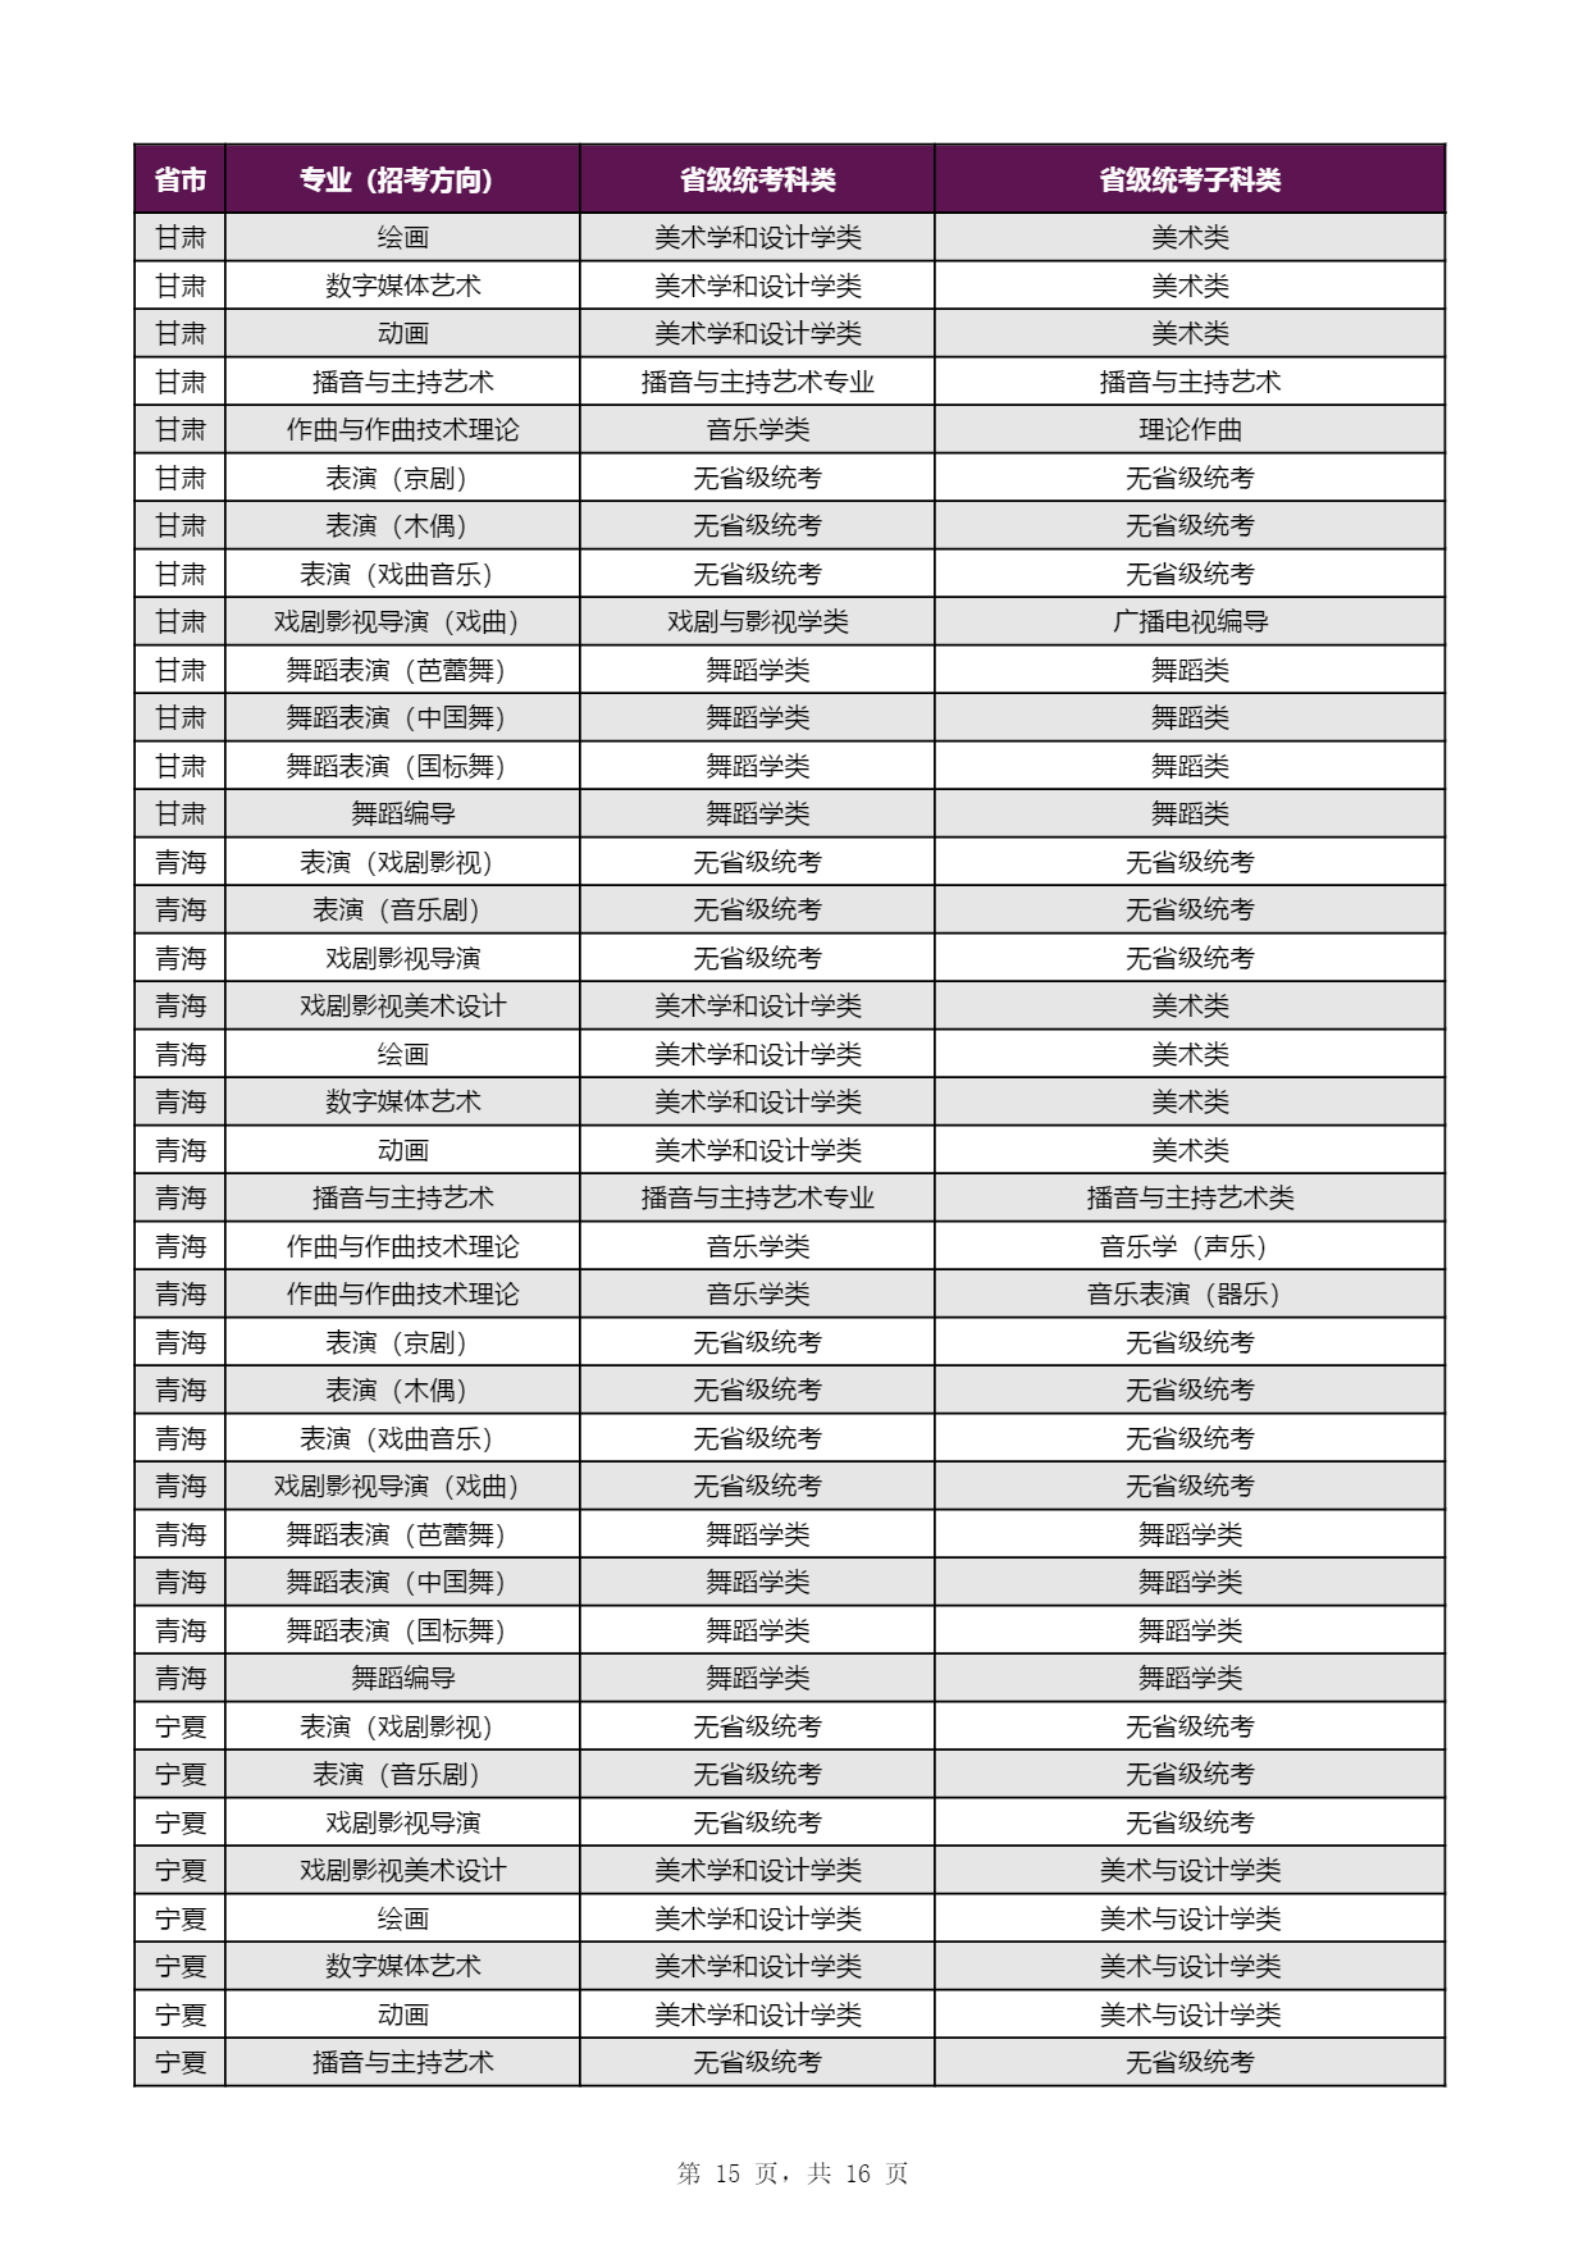 【子科类对应表】上海戏剧学院2023年本科招生专业（招考方向）与各省级统考子科类对应表_14.png